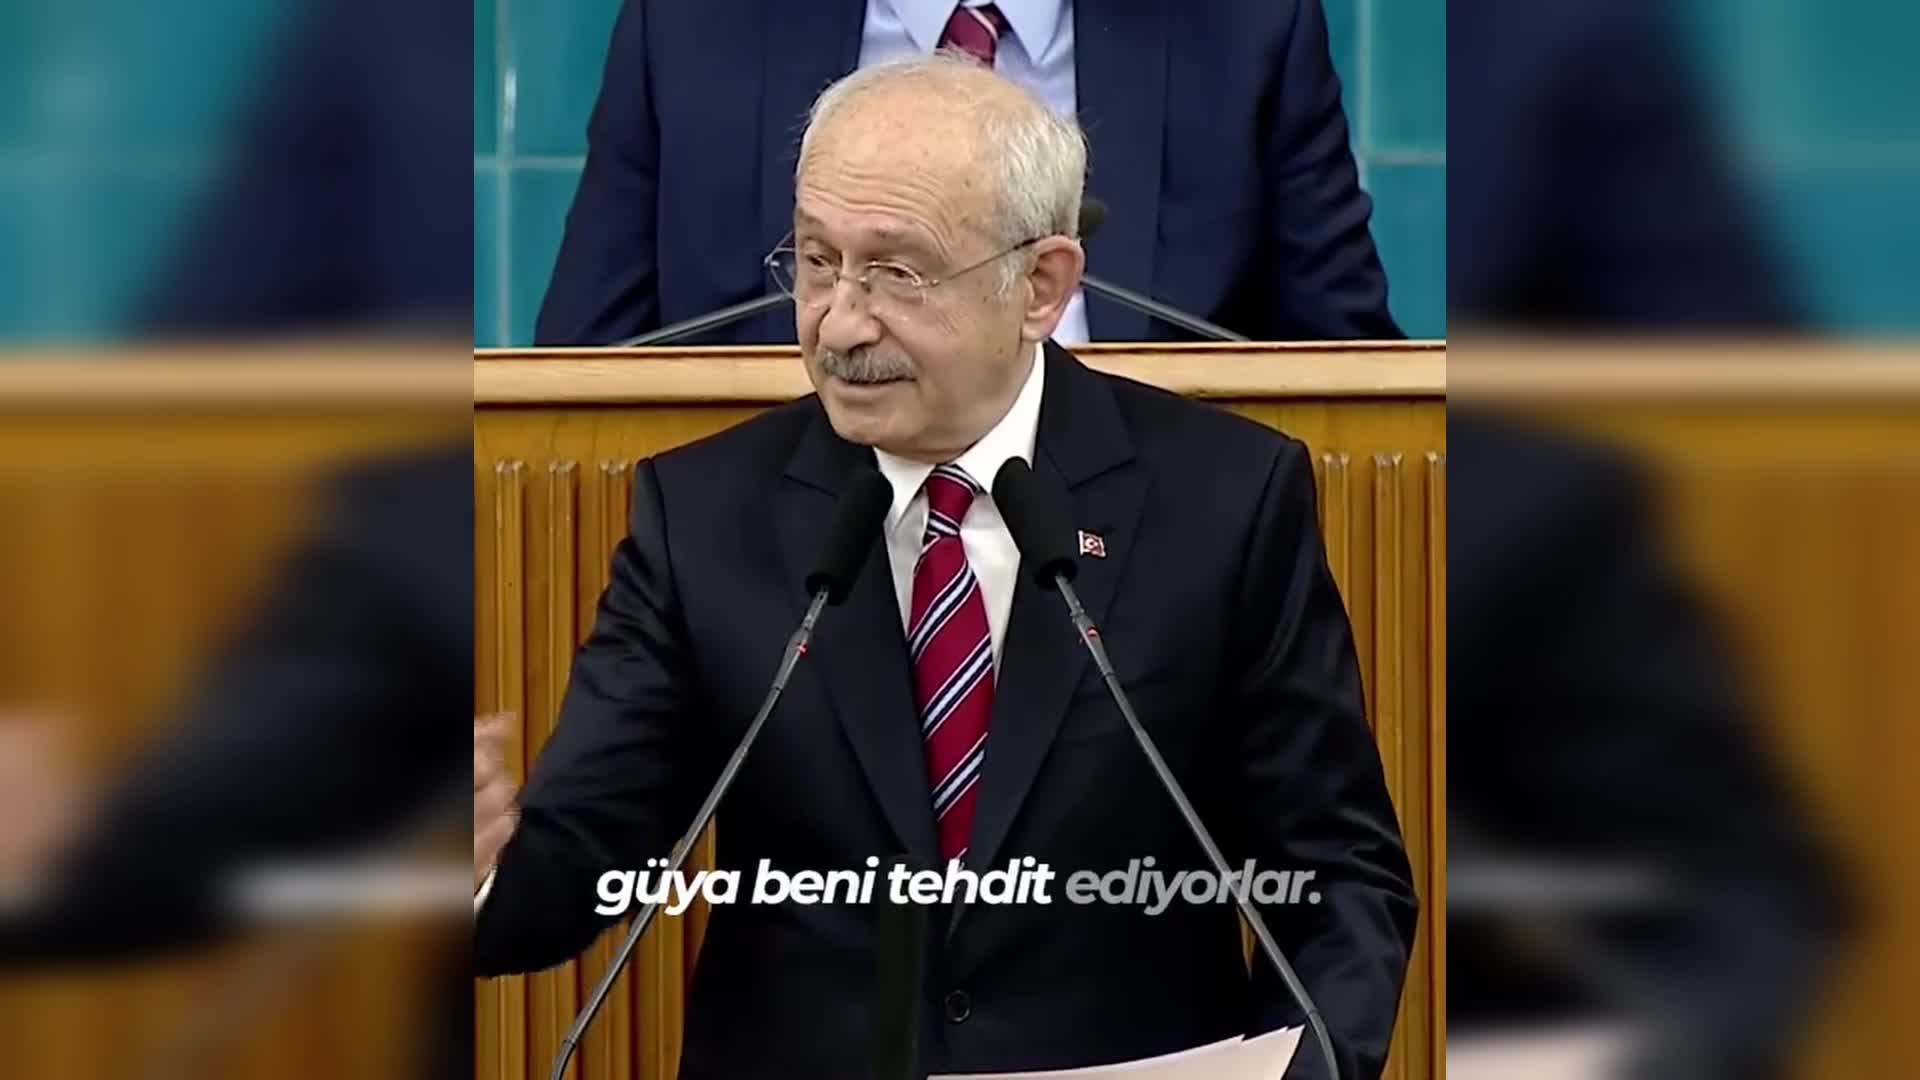 Kılıçdaroğlu'ndan 'vasiyet' paylaşımı: 'Eğer bana bir şey olursa halkıma emanetimdir'